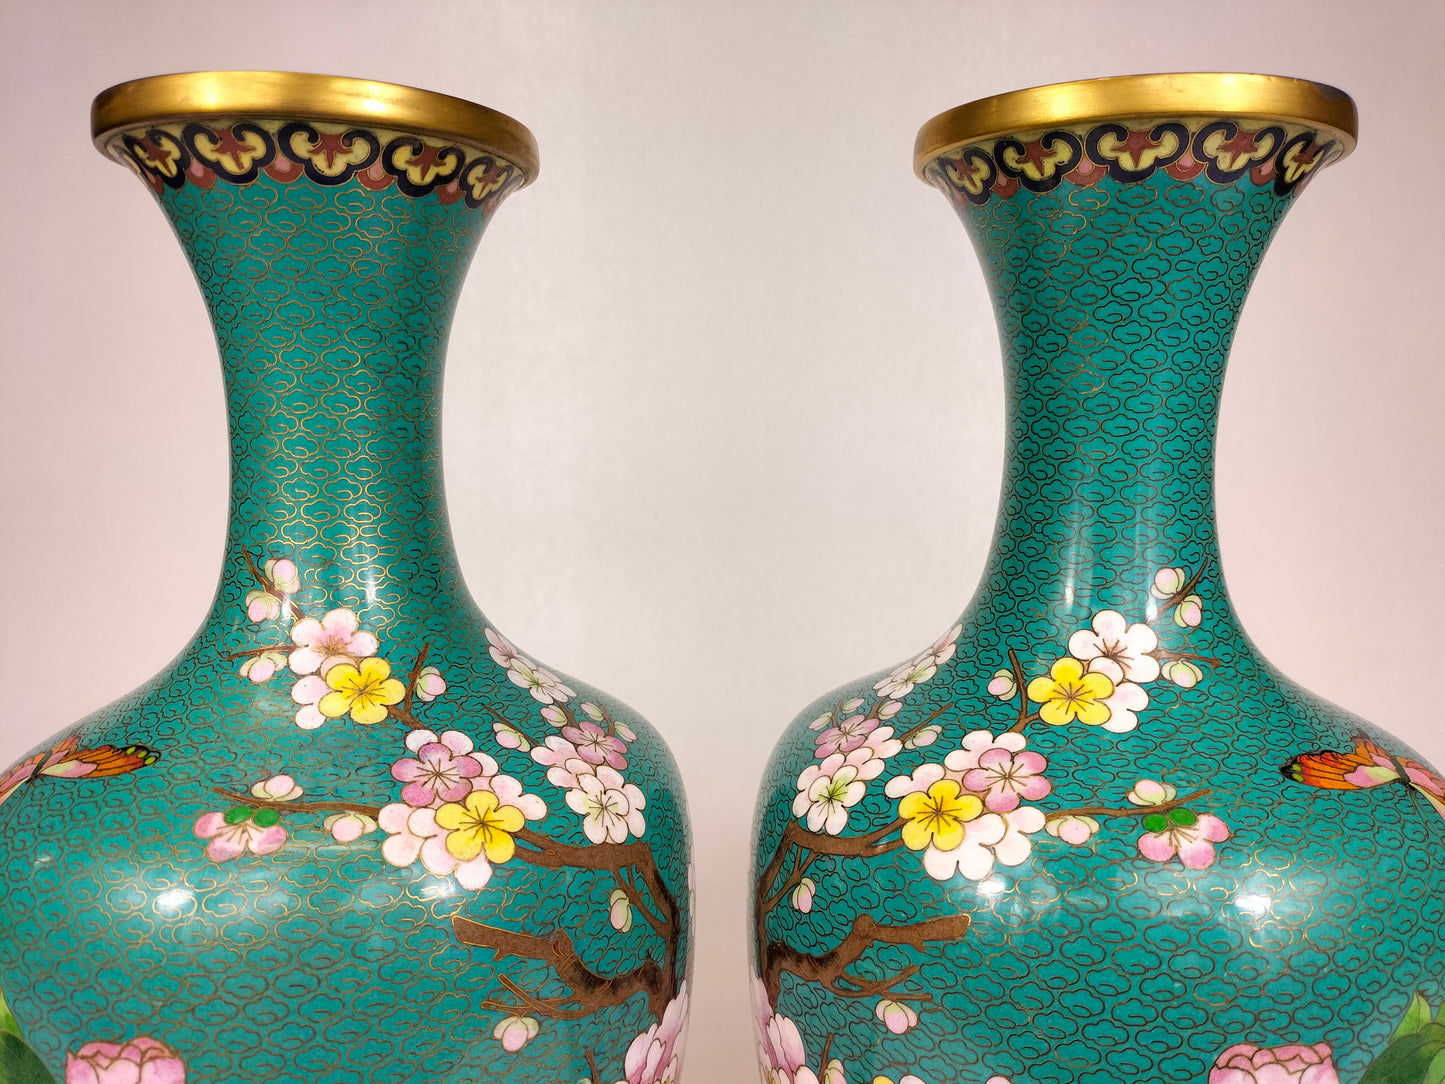 Par de grandes vasos cloisonne chineses decorados com flores // século XX